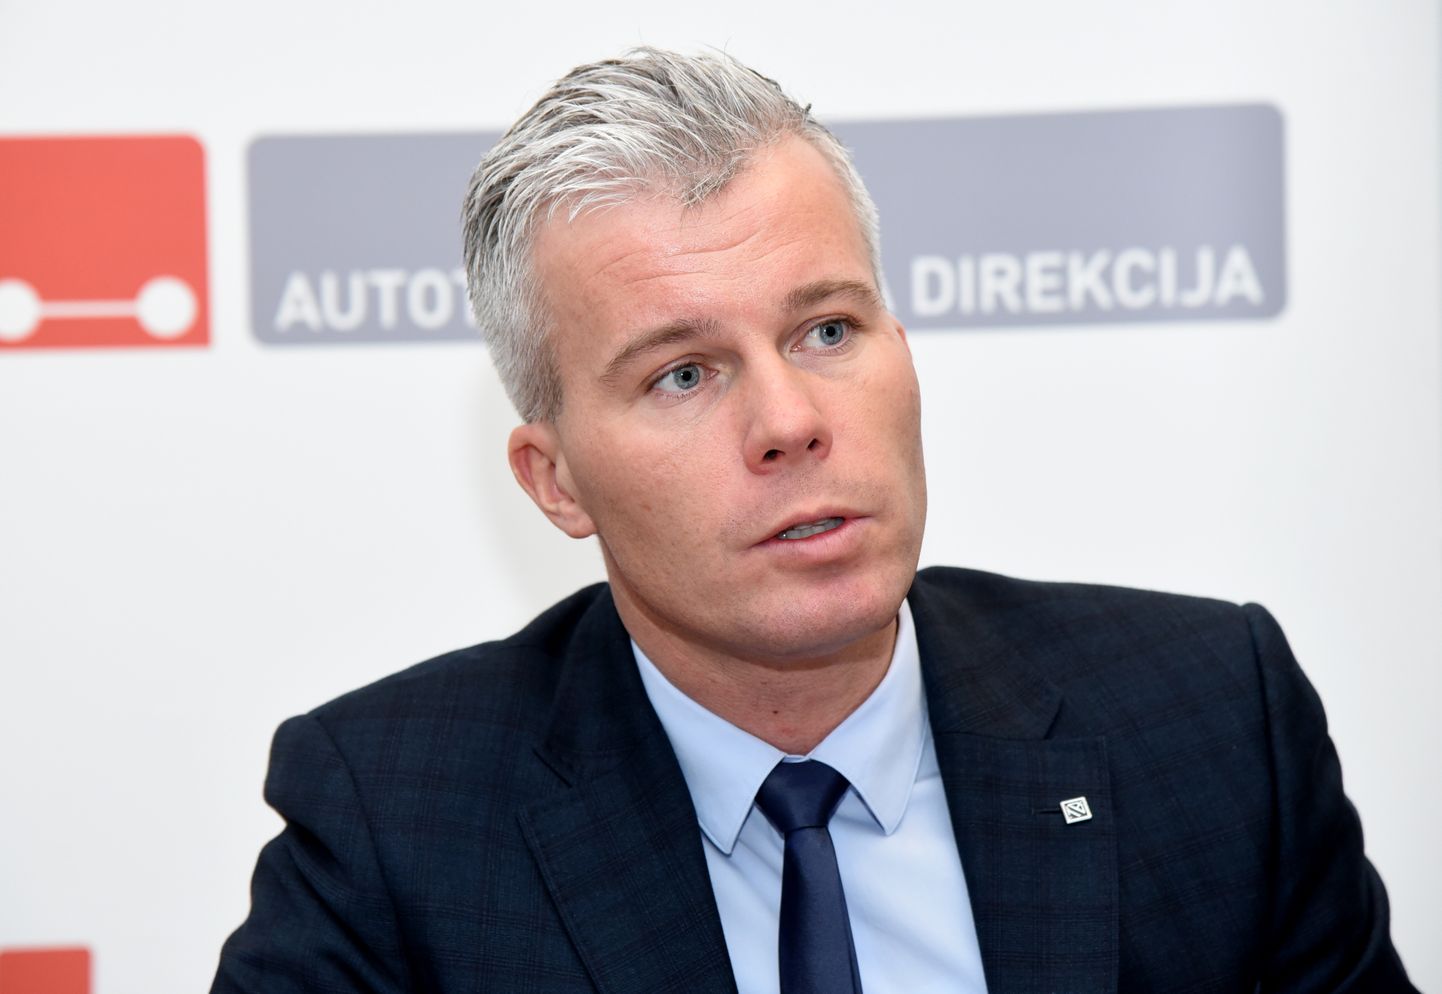 Autotransporta direkcijas valdes priekšsēdētājs Kristiāns Godiņš 